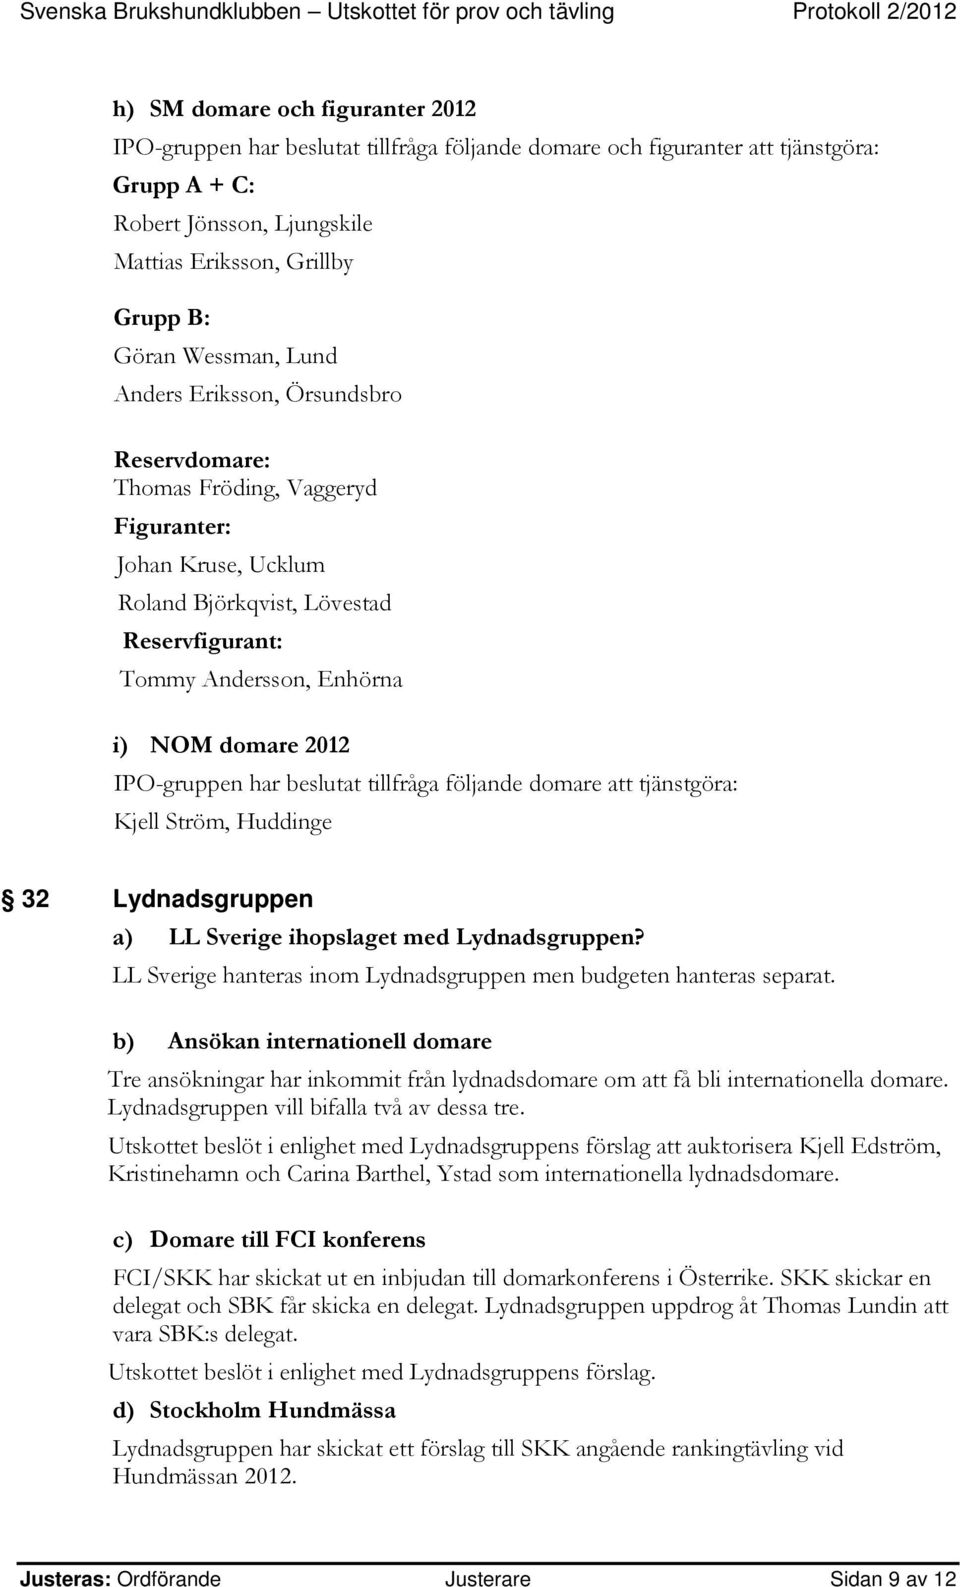 2012 IPO-gruppen har beslutat tillfråga följande domare att tjänstgöra: Kjell Ström, Huddinge 32 Lydnadsgruppen a) LL Sverige ihopslaget med Lydnadsgruppen?